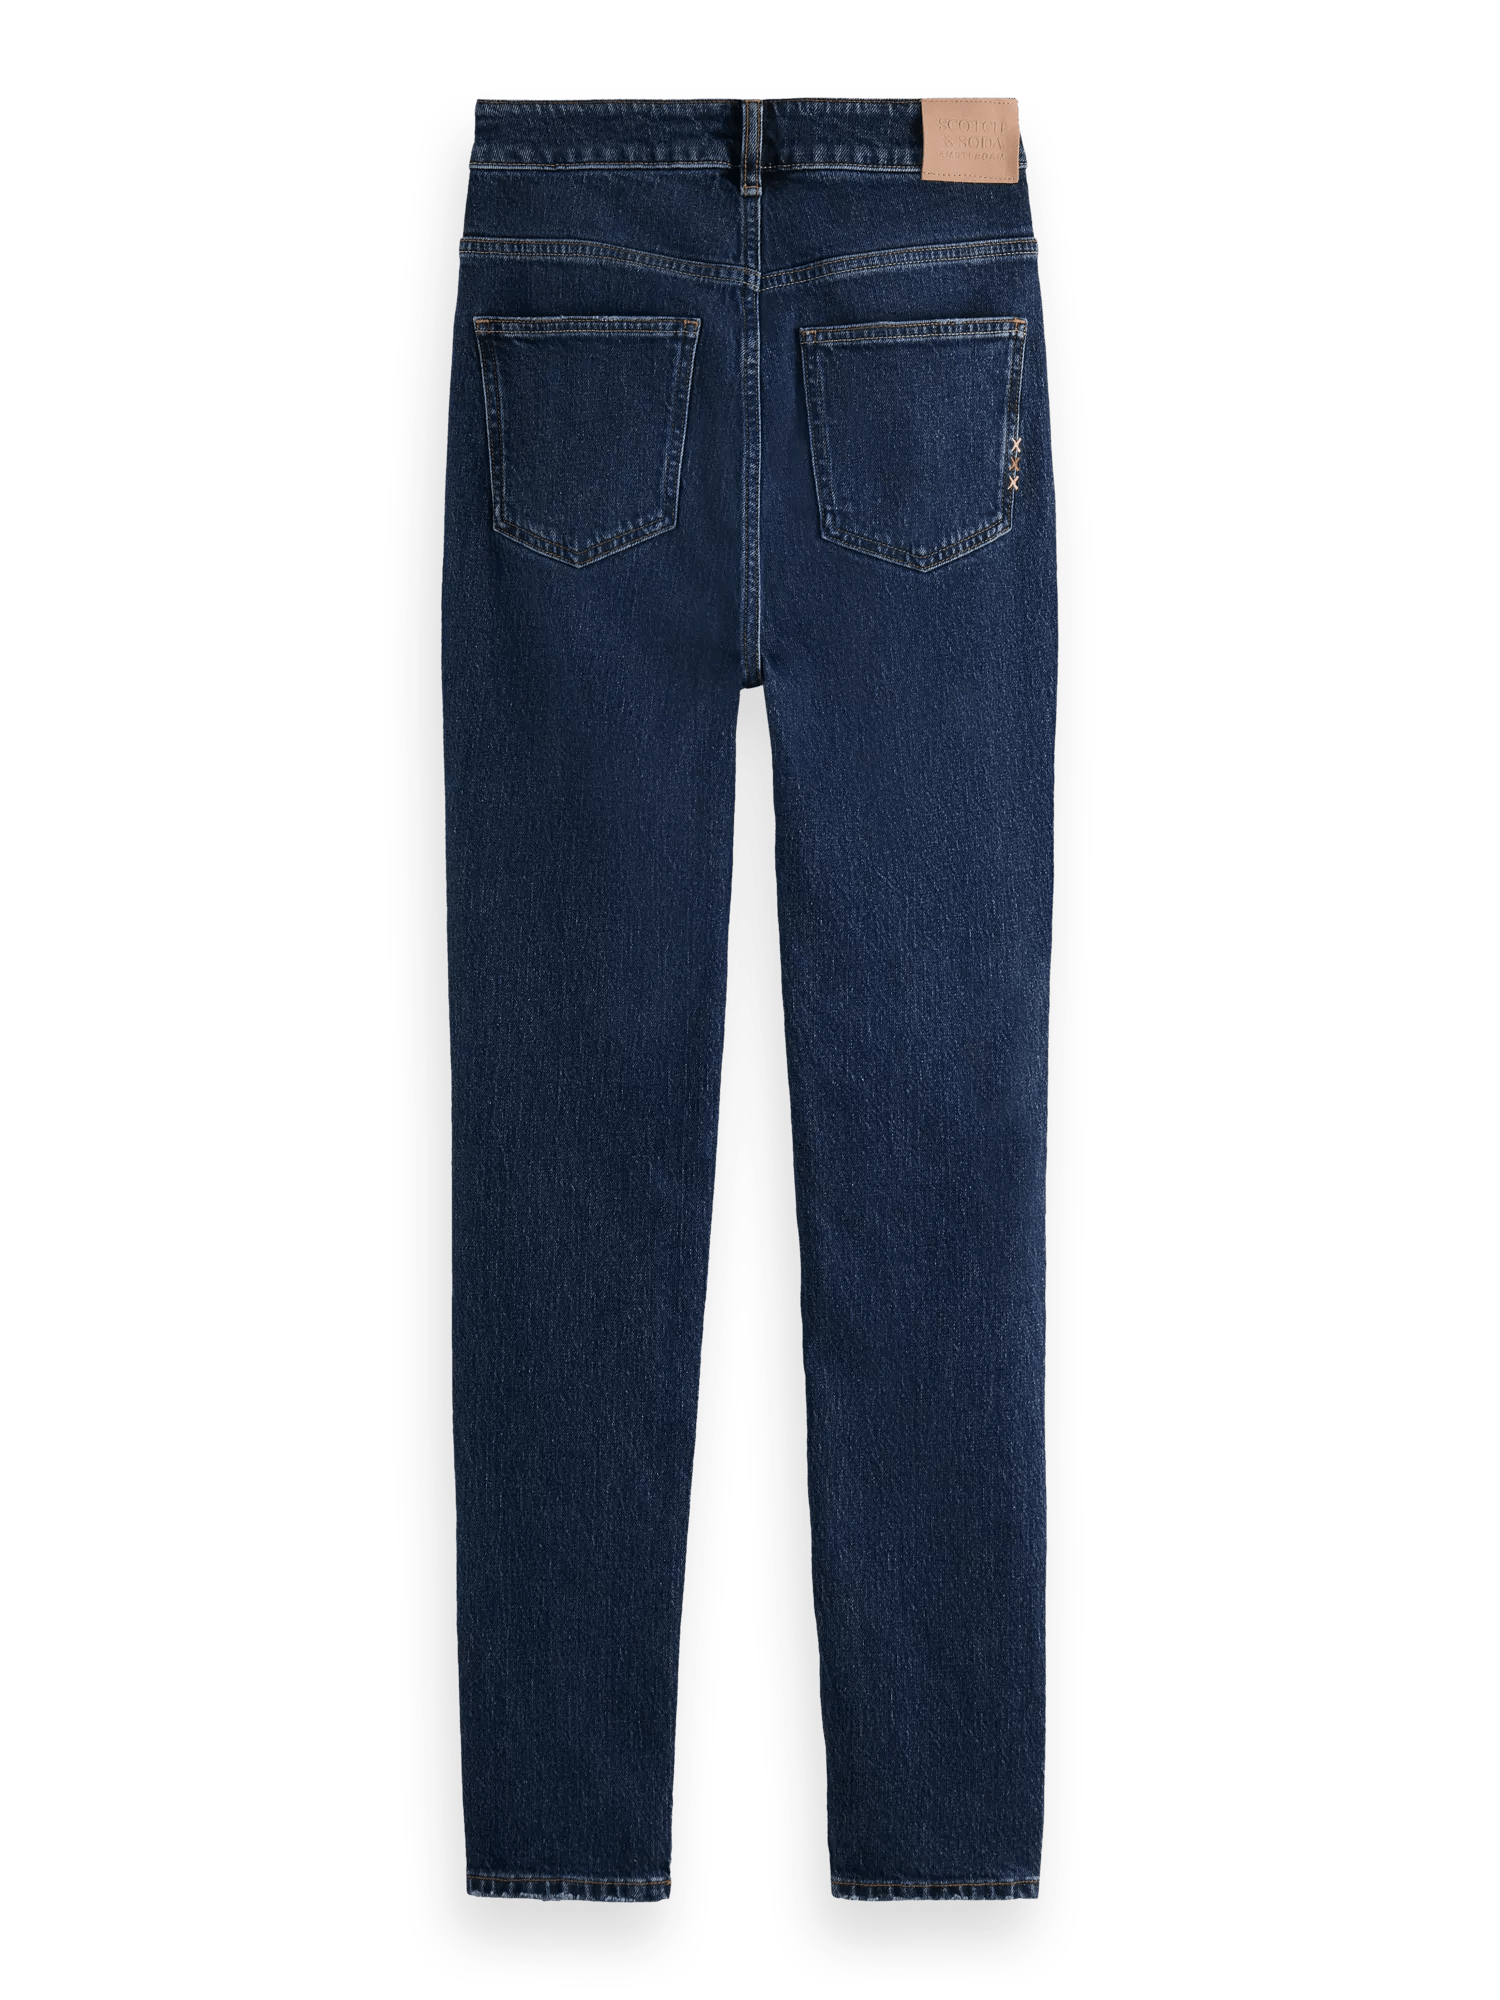 Scotch & Soda De Line high-rise skinny fit jeans BCK